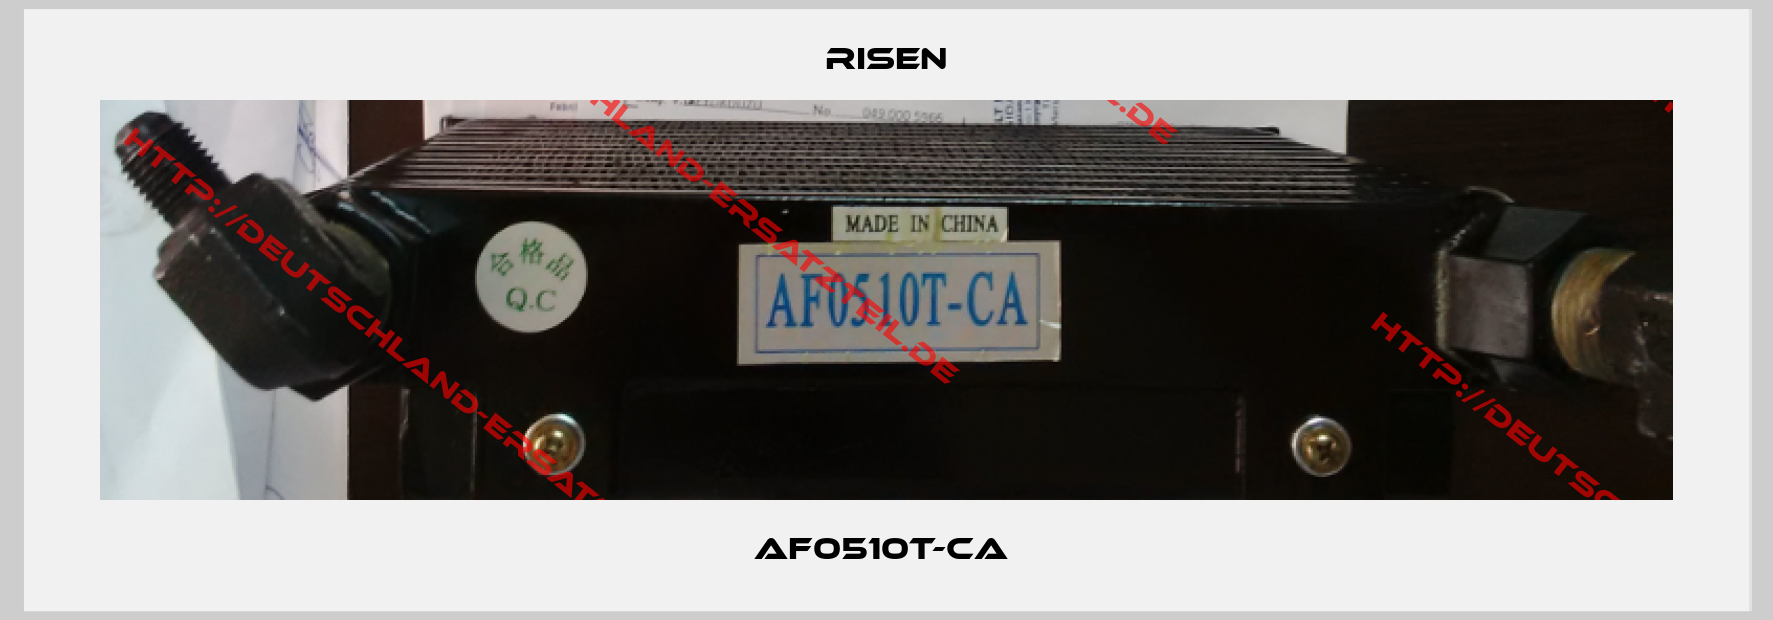 RISEN-AF0510T-CA 